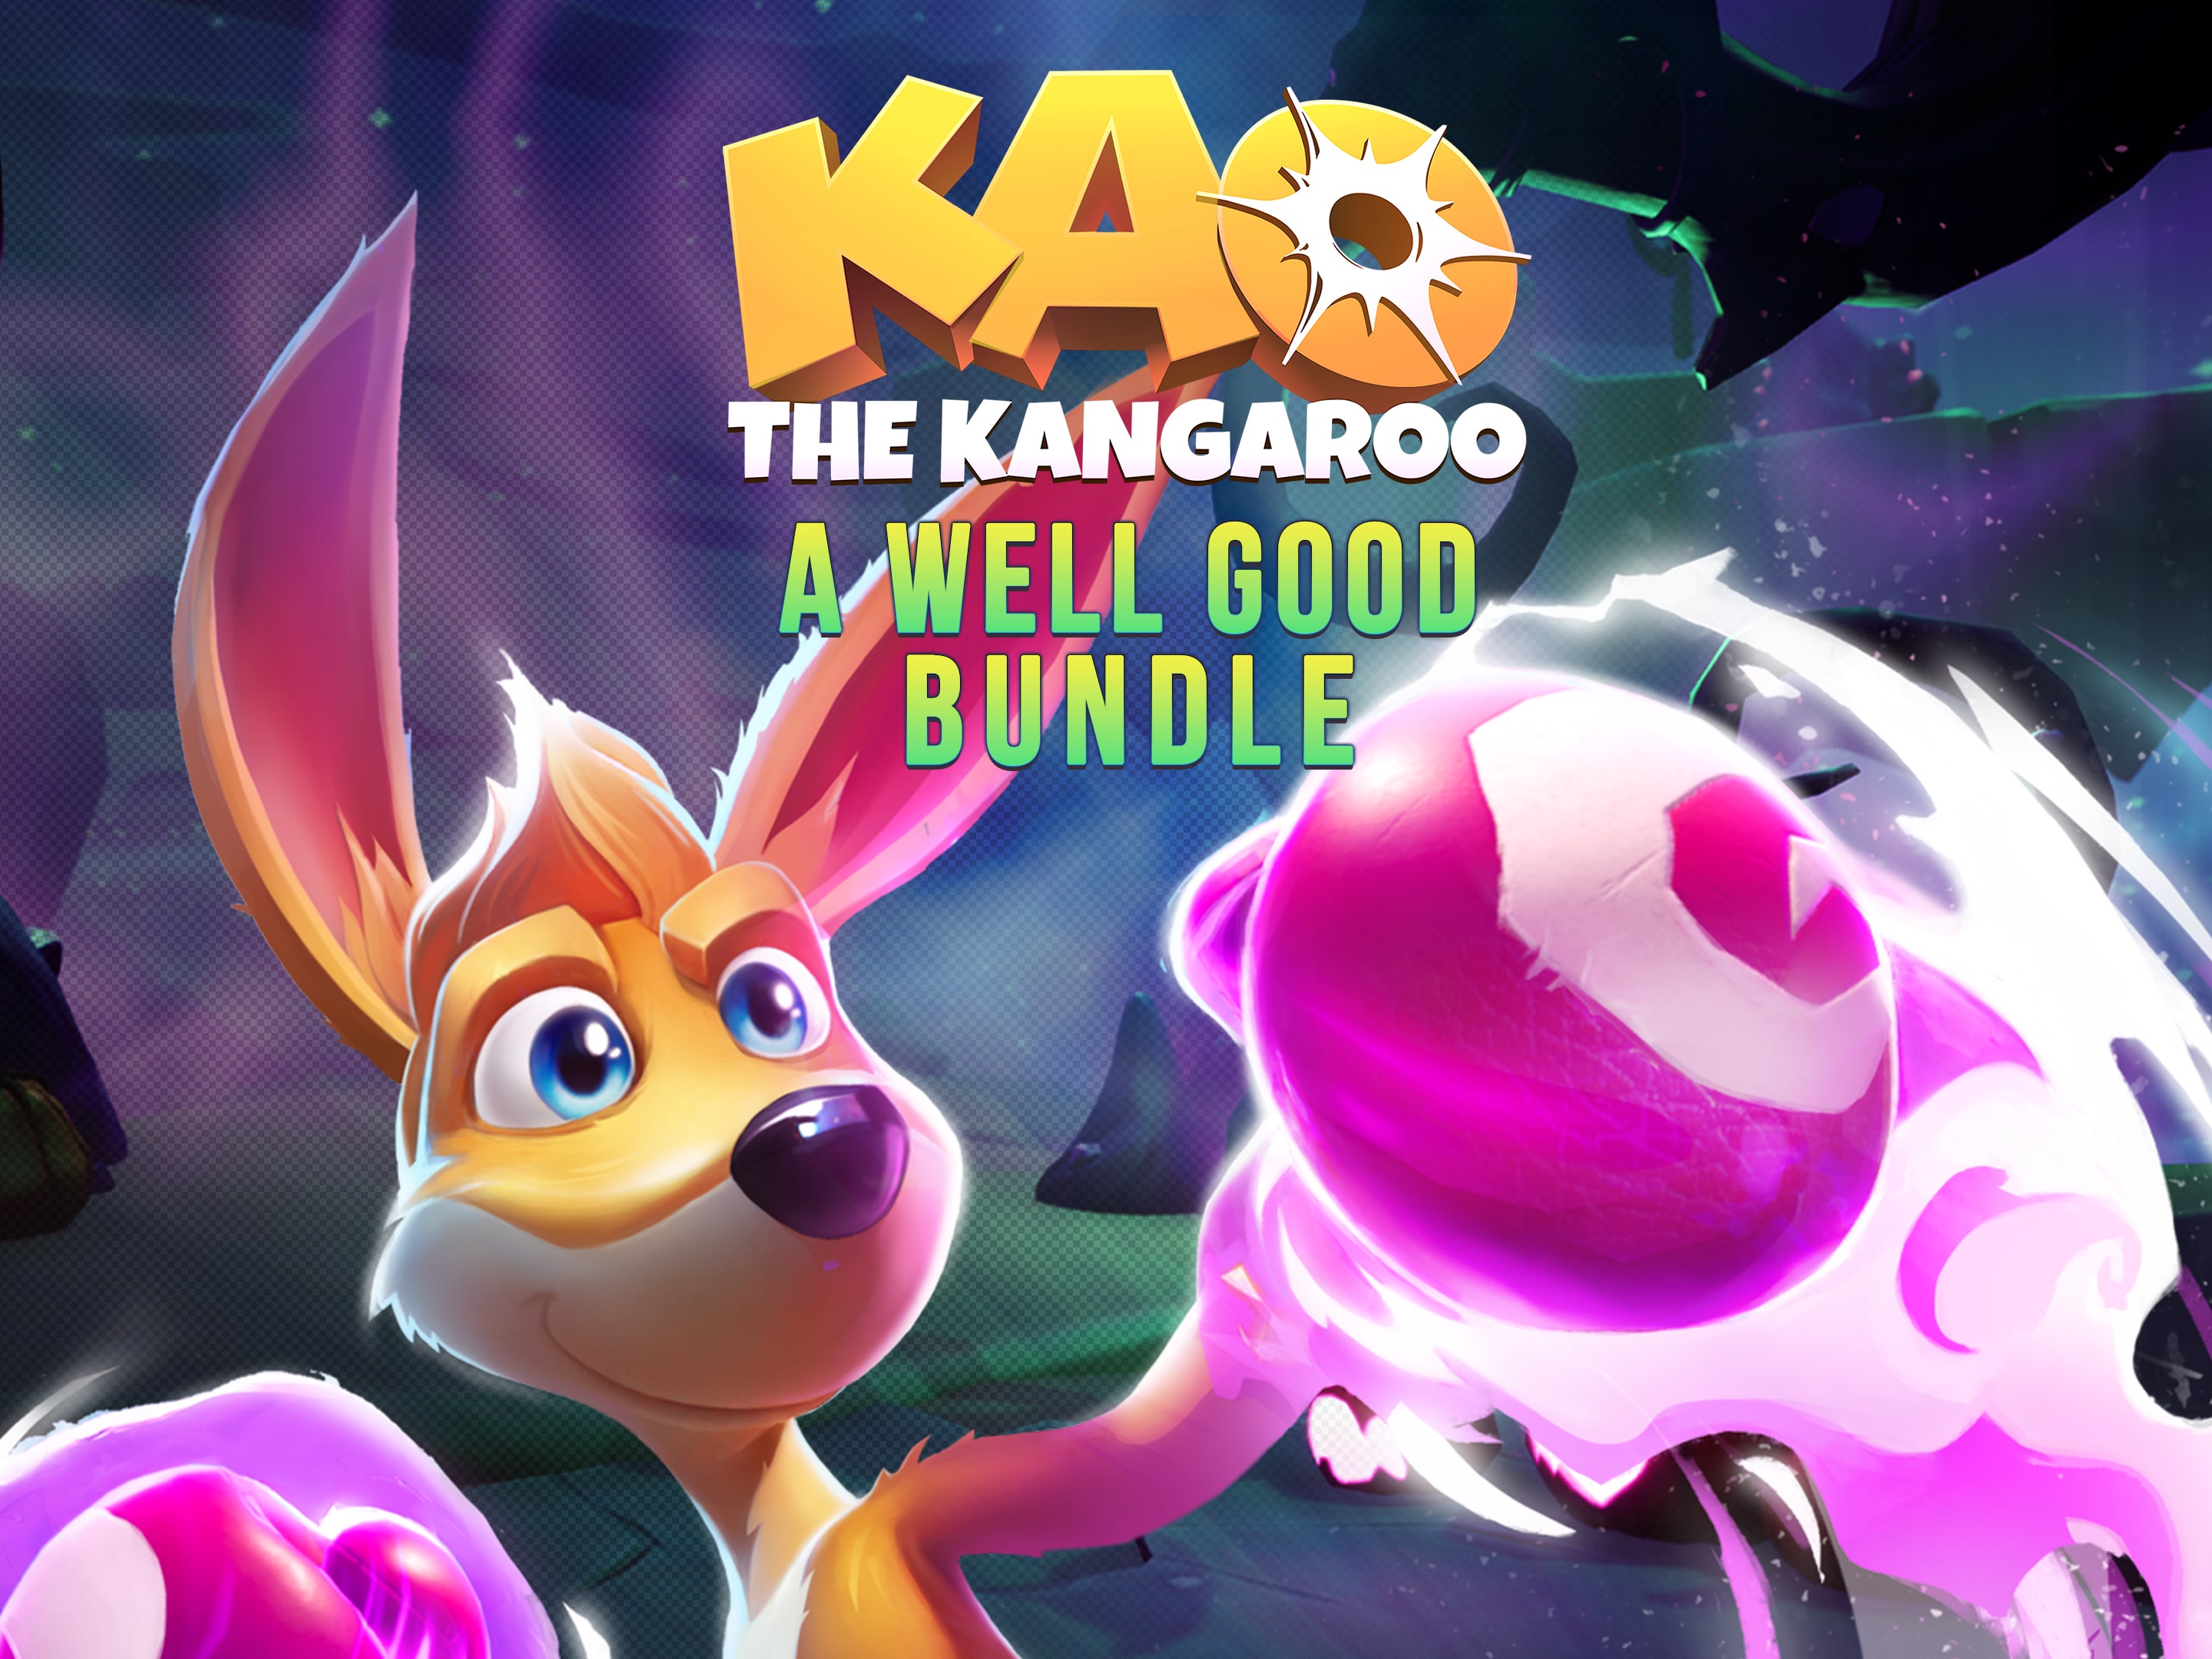 Bundle the Kao Good Well Kangaroo A